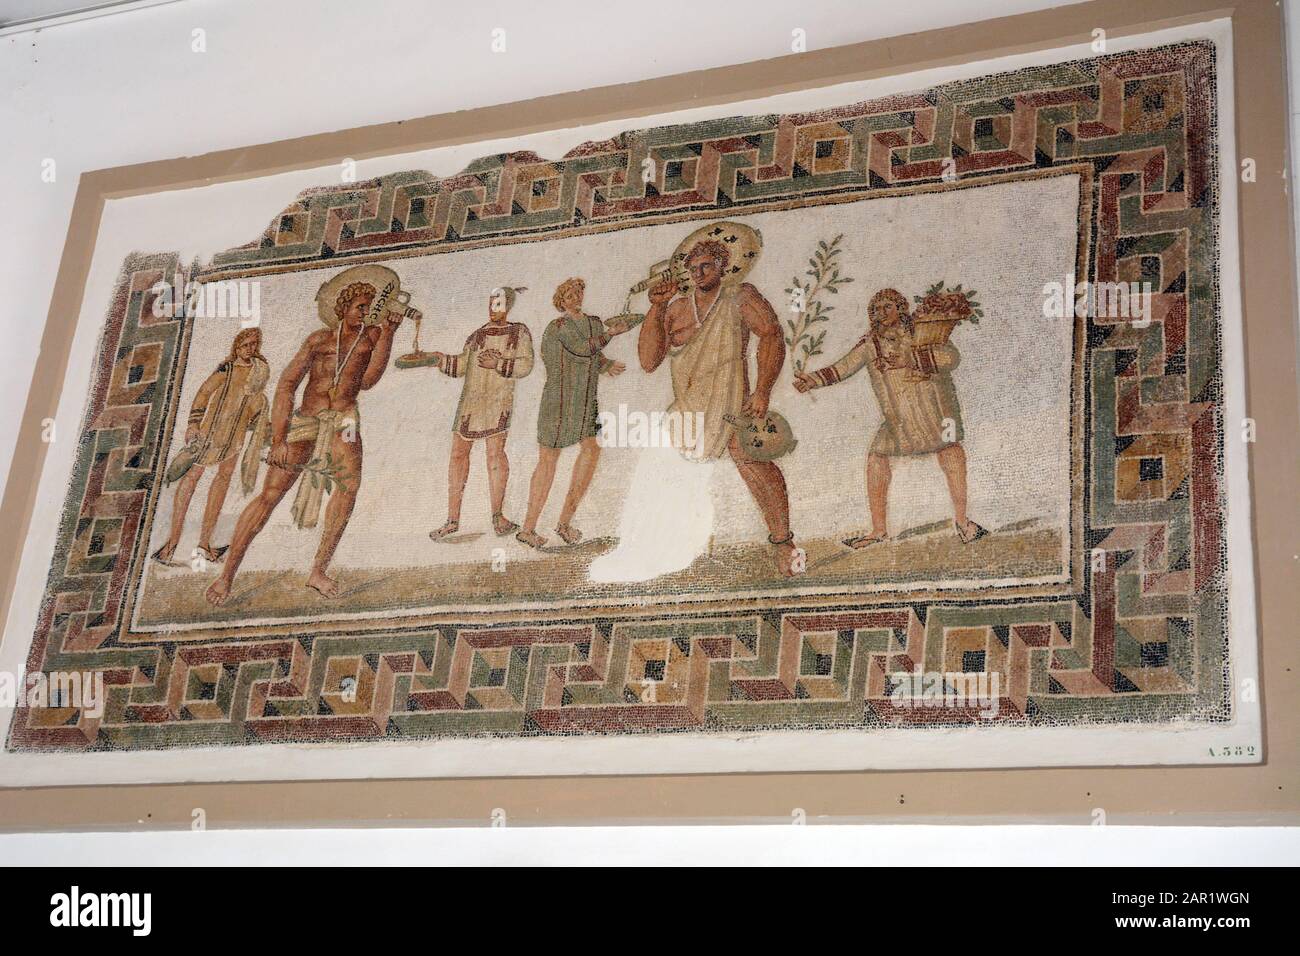 Ein altes römisches Mosaik, das Diener zeigt, die bei einem Bankett Wein aus Tassen gießen, das im Nationalmuseum von Bardo, Tunis, Tunesia, ausgestellt ist. Stockfoto